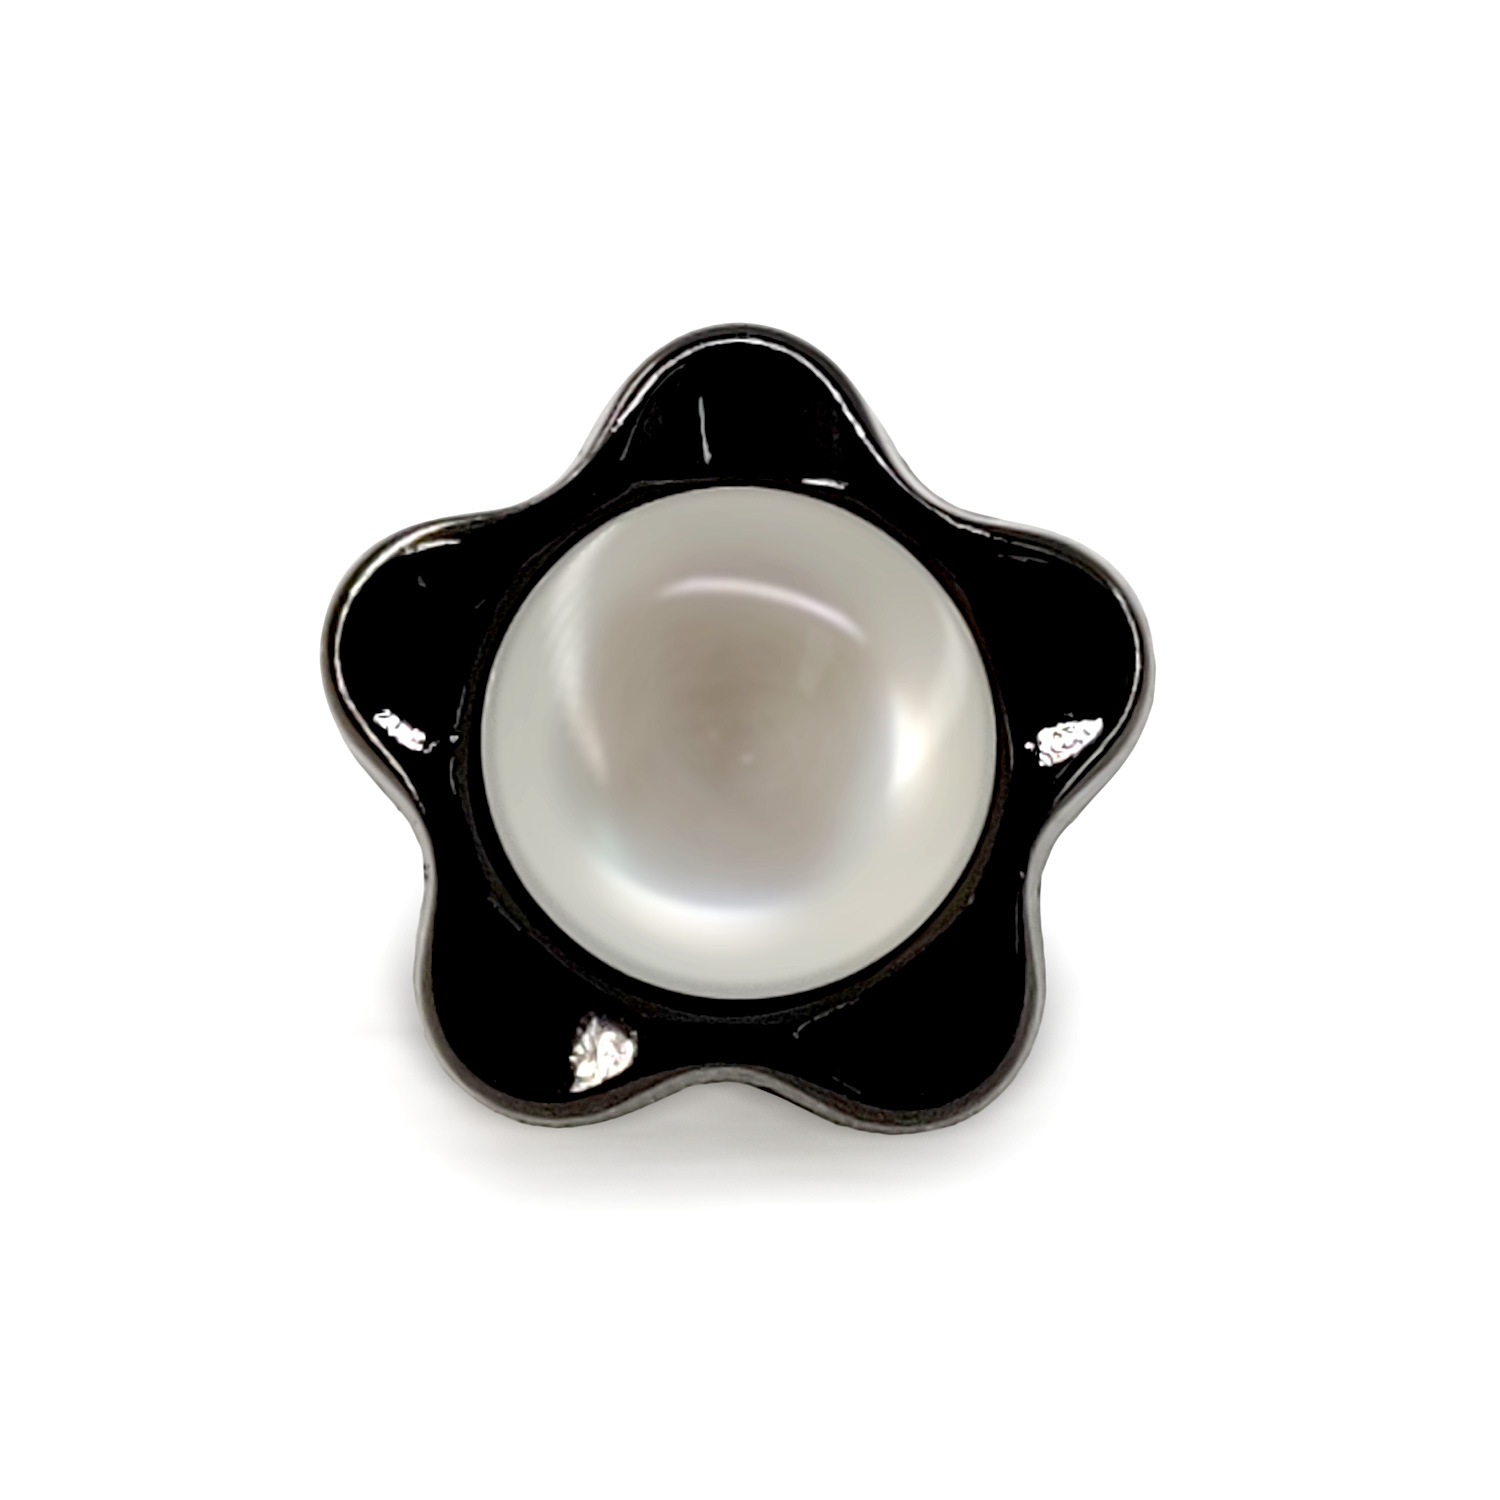 Craftisum Black Cute Star Shank Sewing Buttons 20 Pcs - 10mm, 13/32"